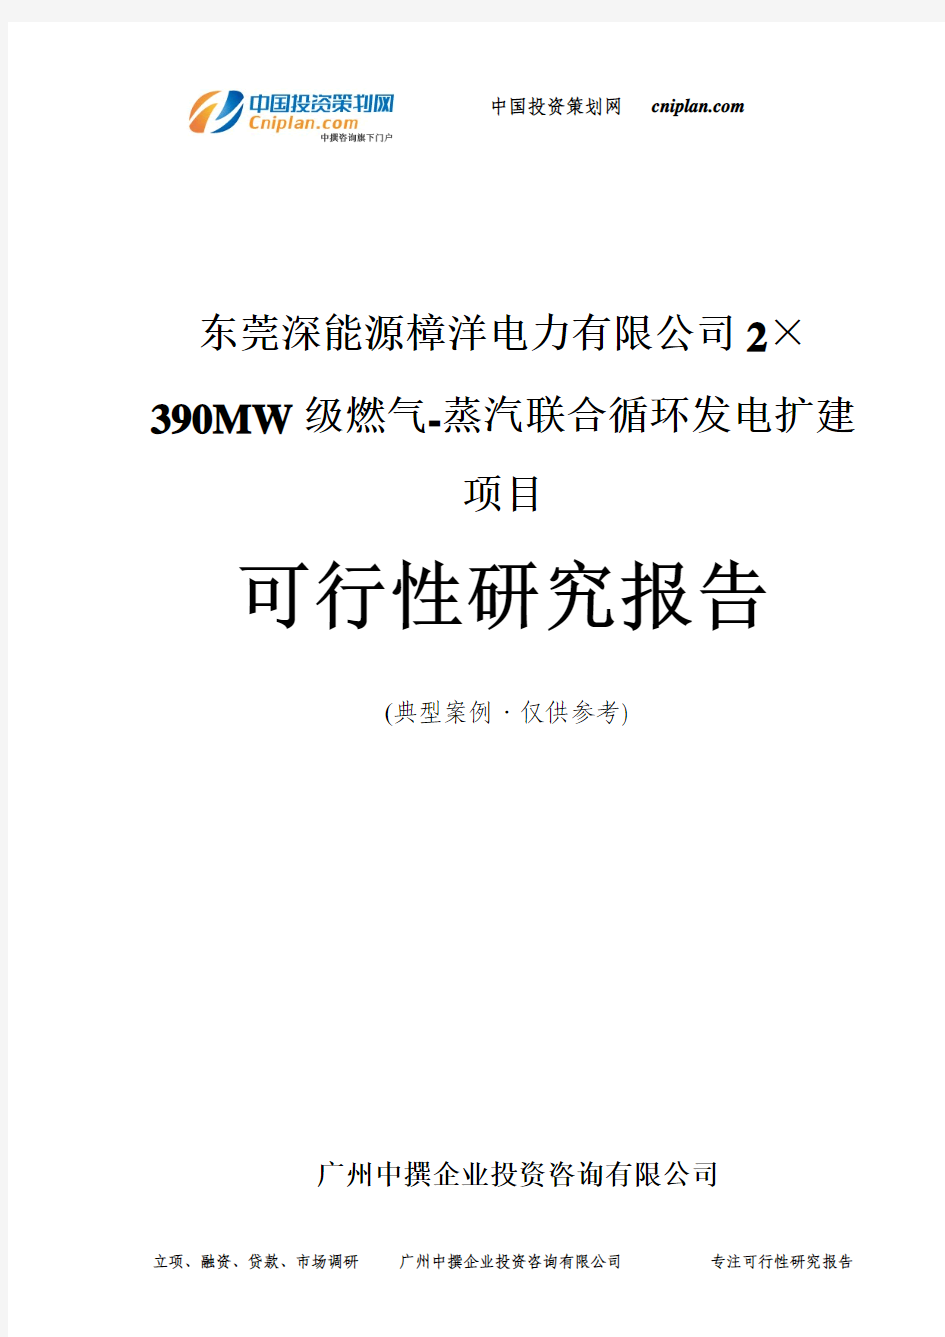 东莞2×390MW级燃气-蒸汽联合循环发电扩建项目可行性研究报告-广州中撰咨询